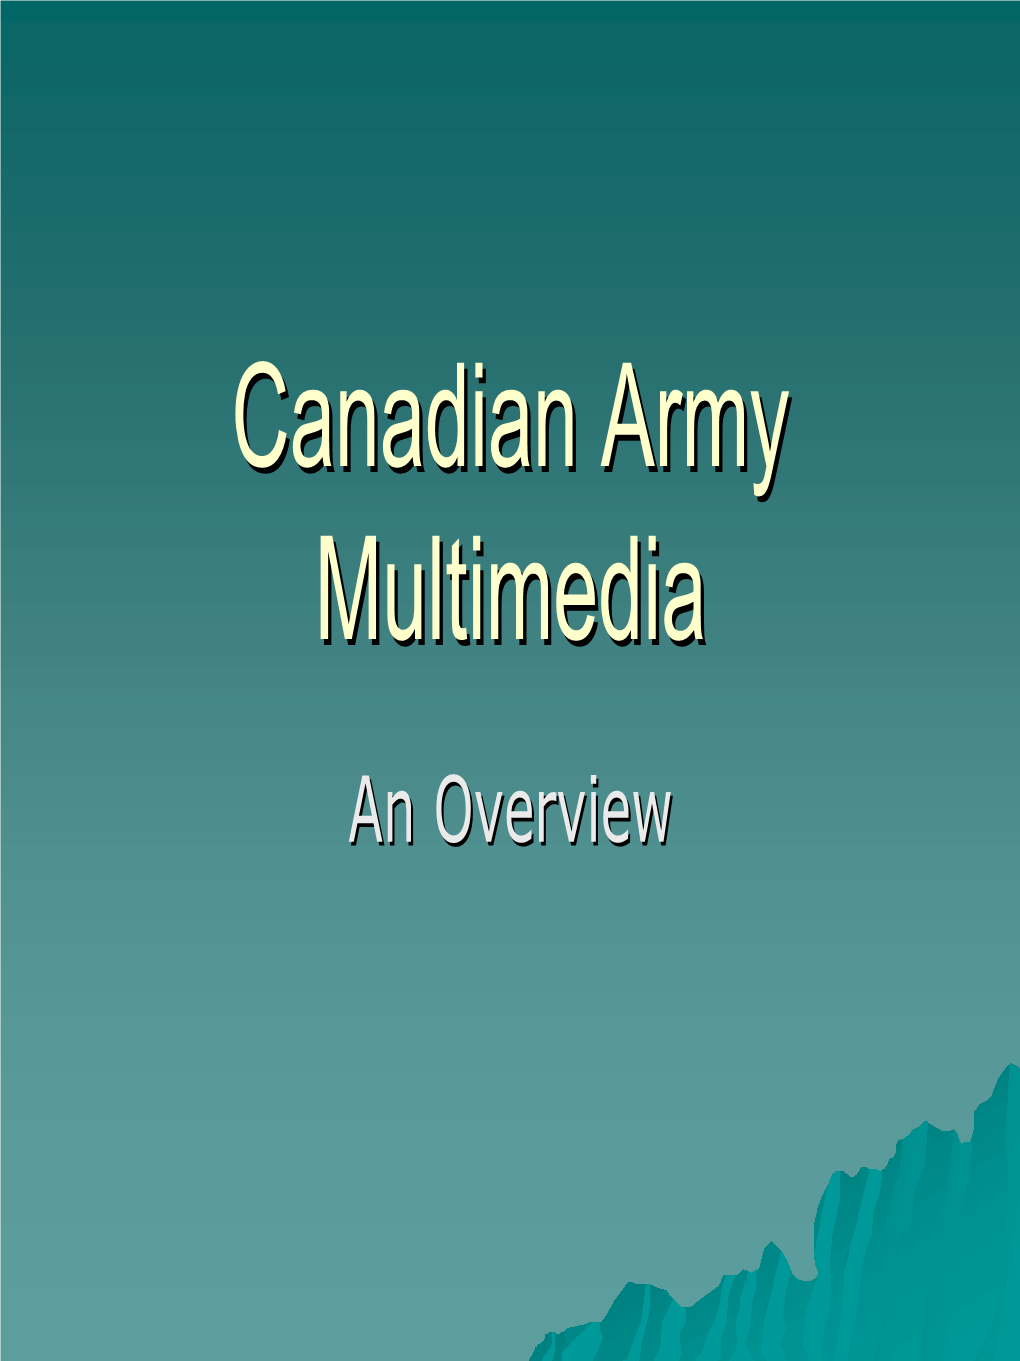 Canadian Army Multimedia